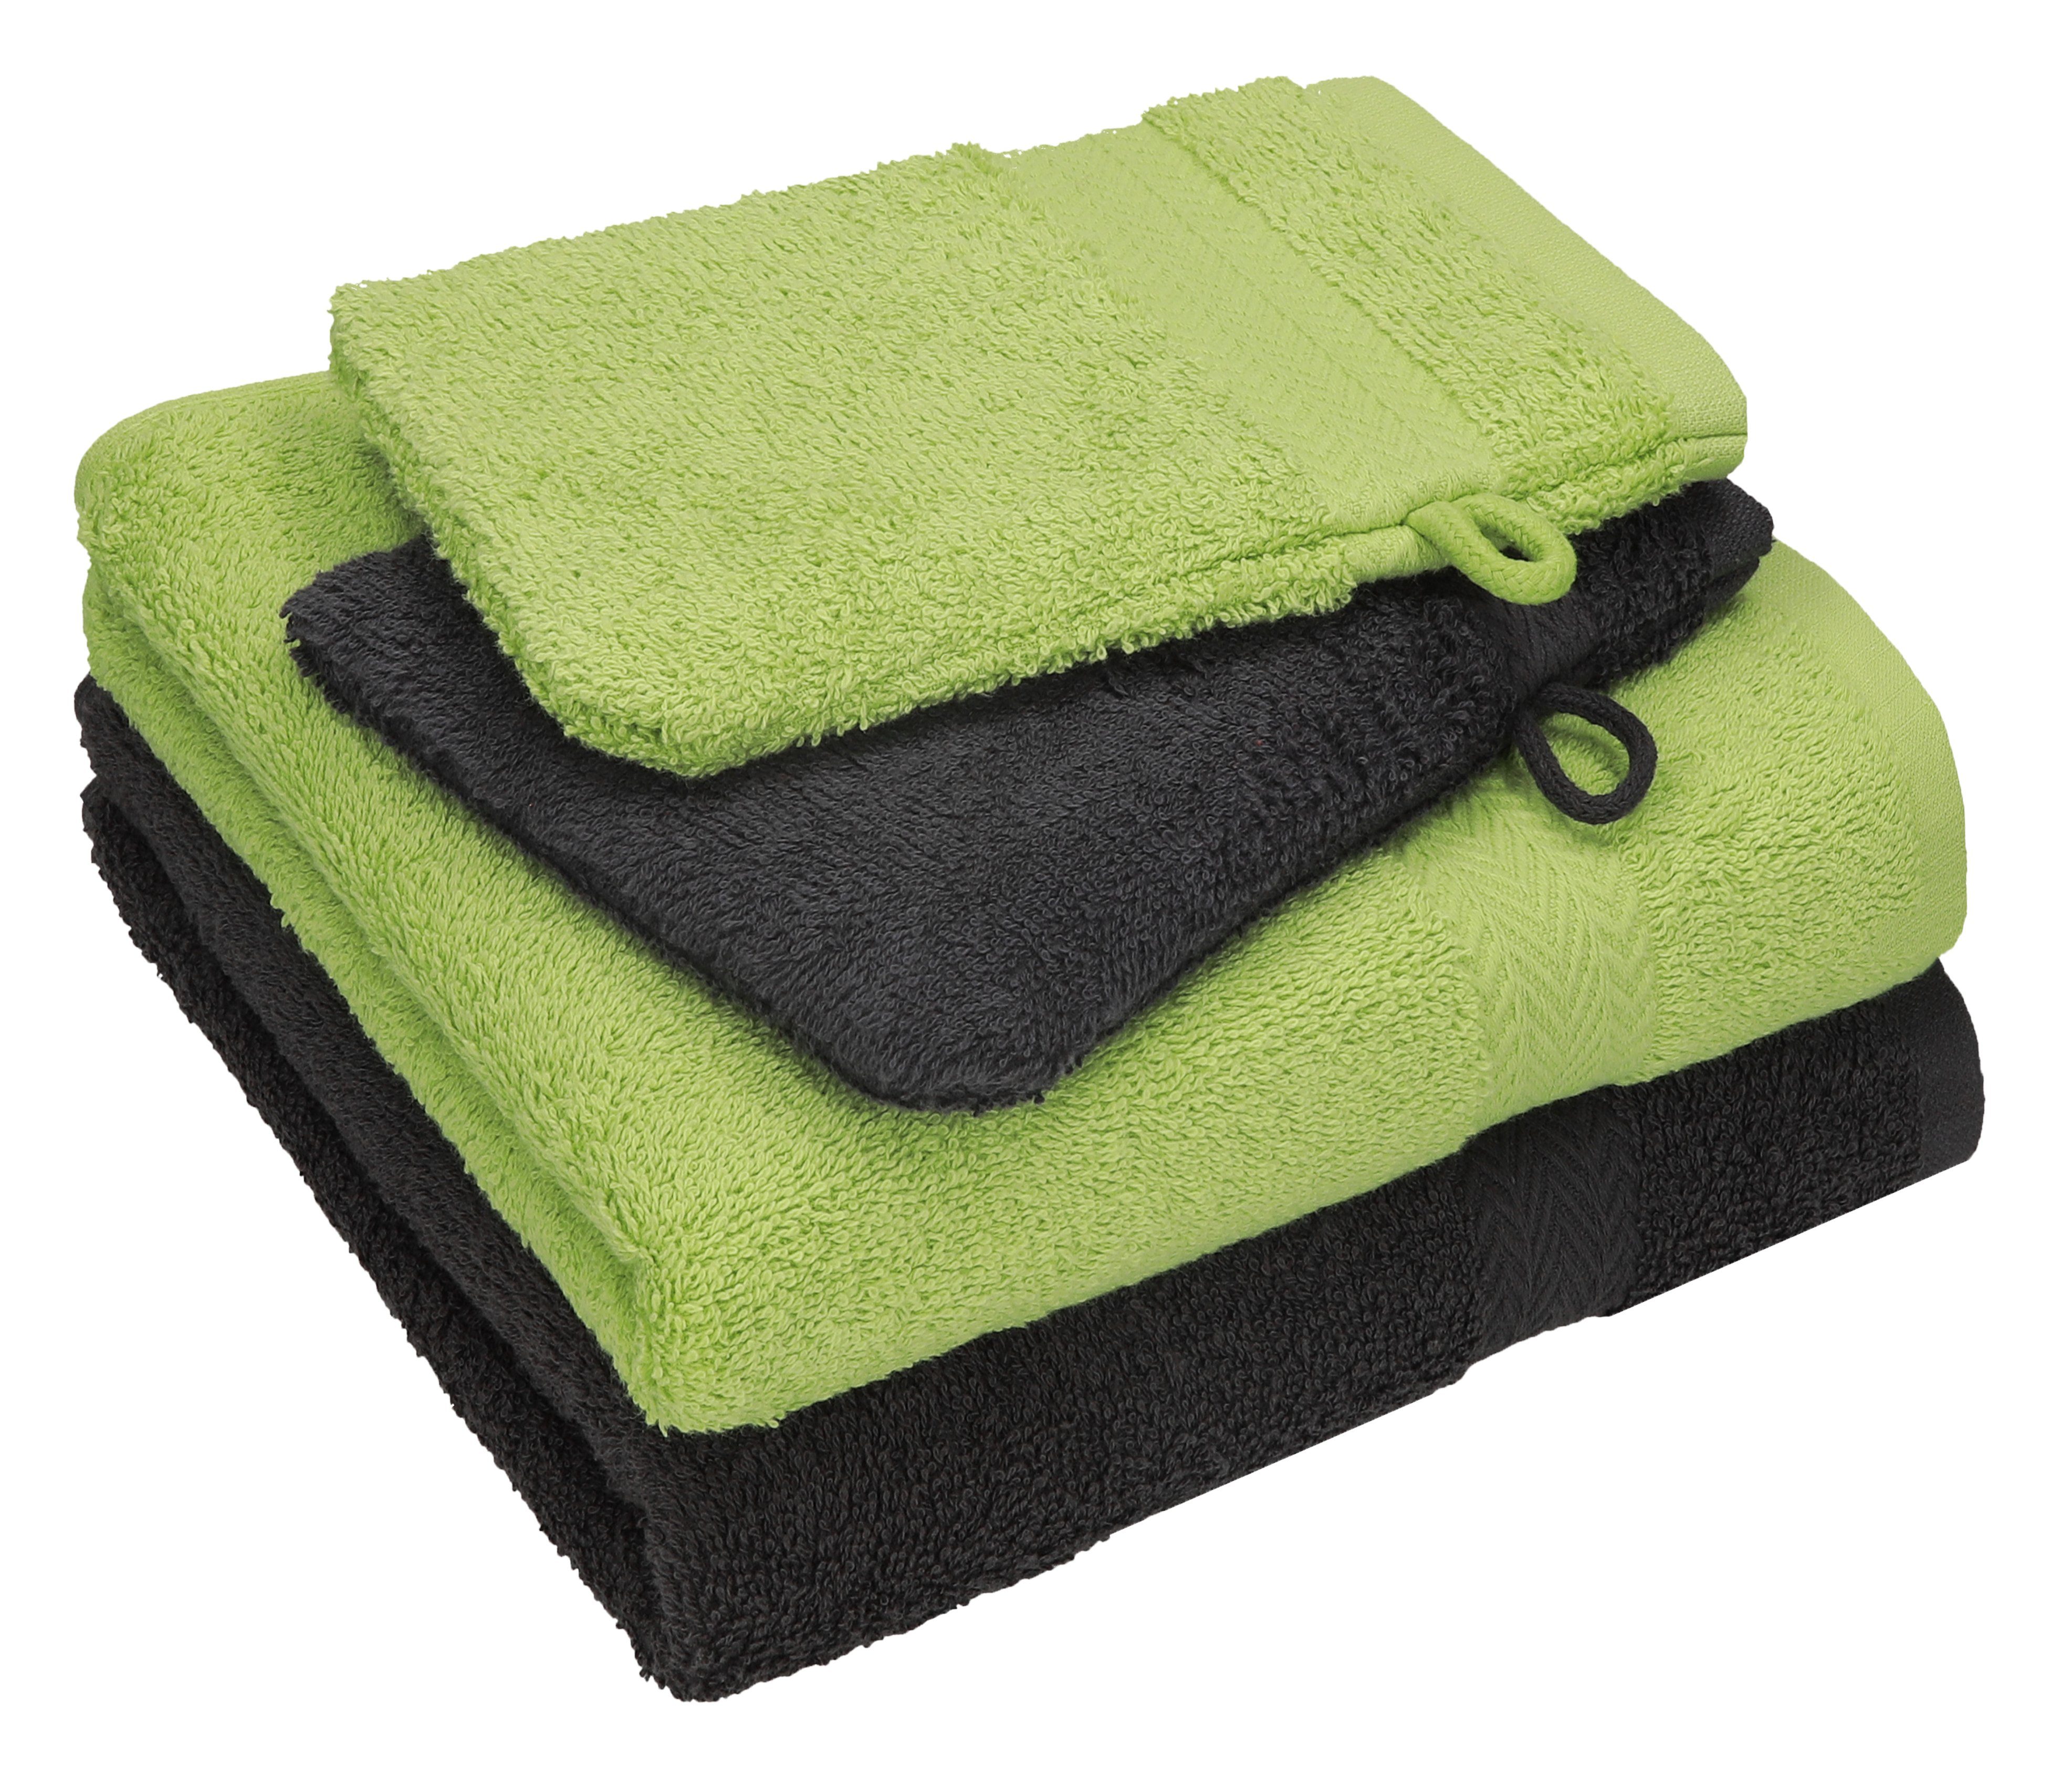 Betz Handtuch Set 4 tlg. Handtuch Set HAPPY Pack 100% Baumwolle 2 Handtücher 2 Waschhandschuhe, 100% Baumwolle graphit grau - avocadogrün